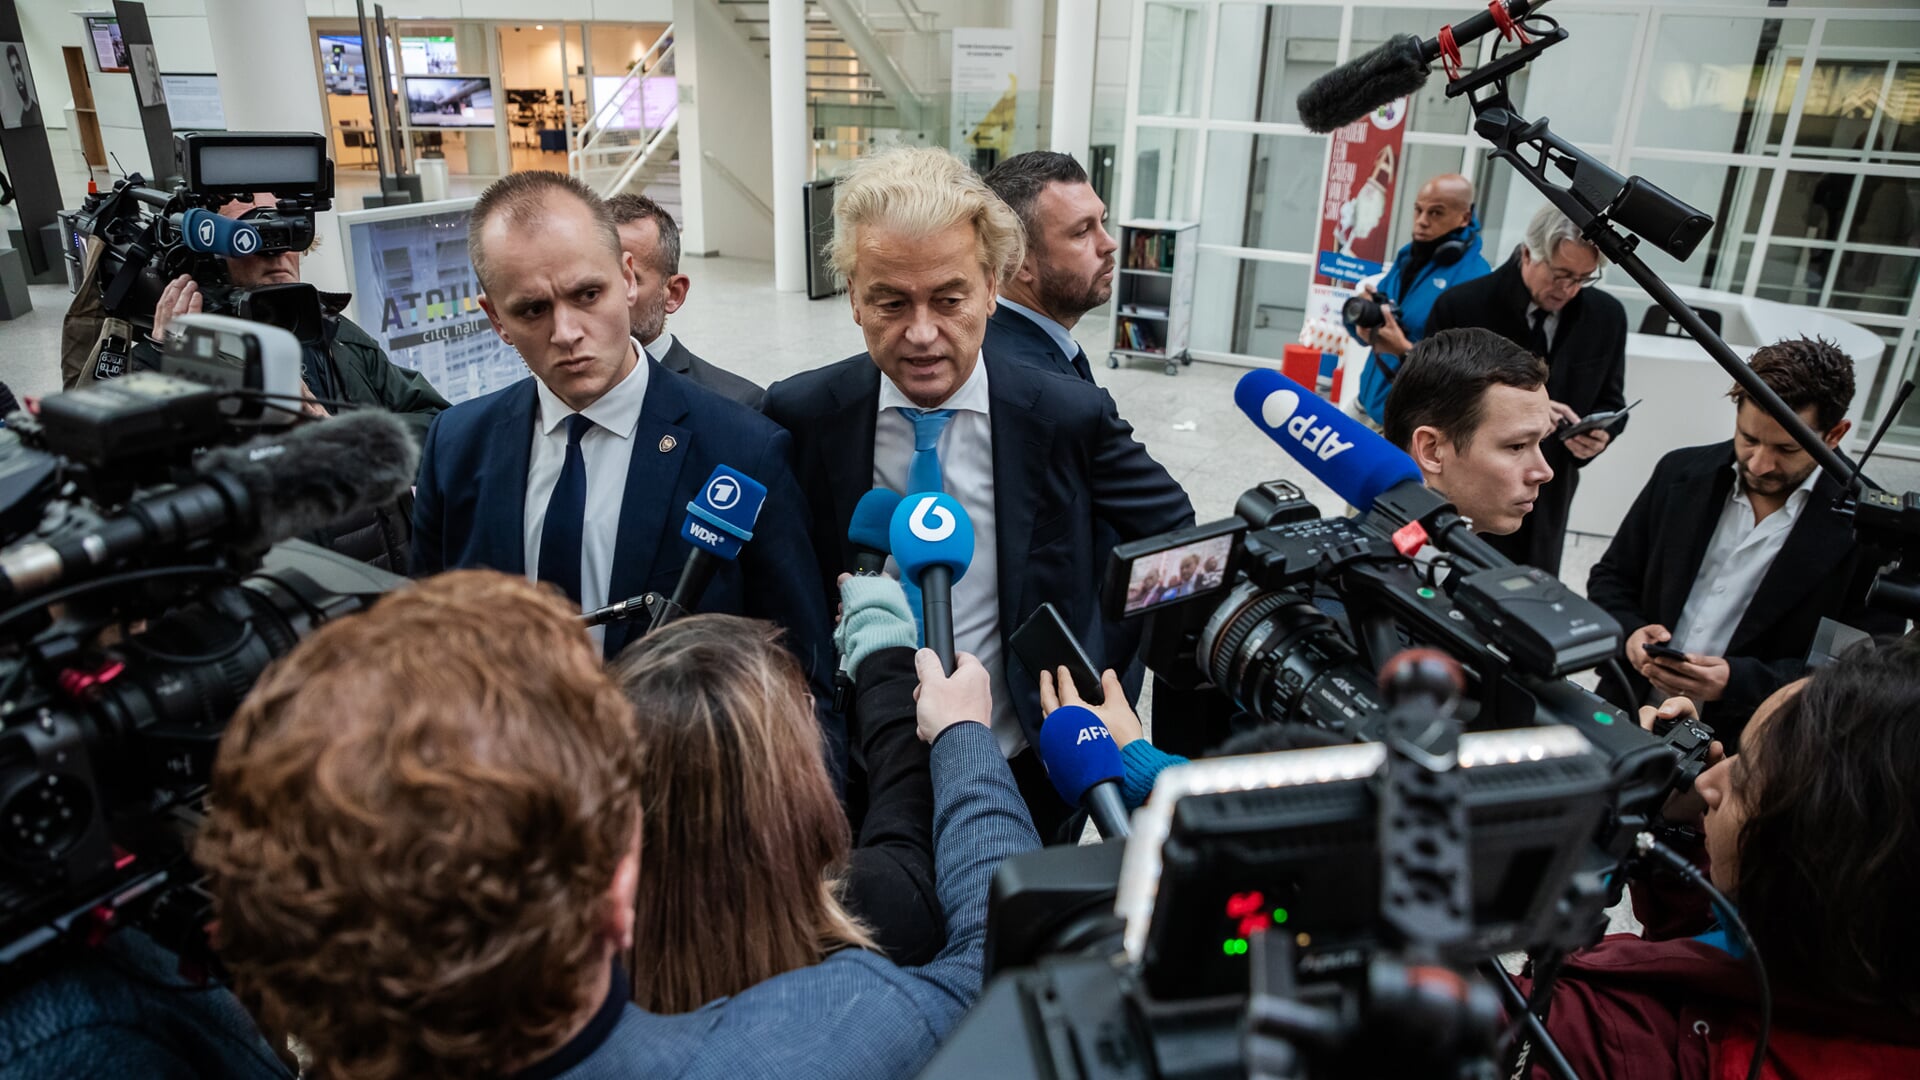 Grote belangstelling van de pers bij tijdens het stemmen voor Geert Wilders